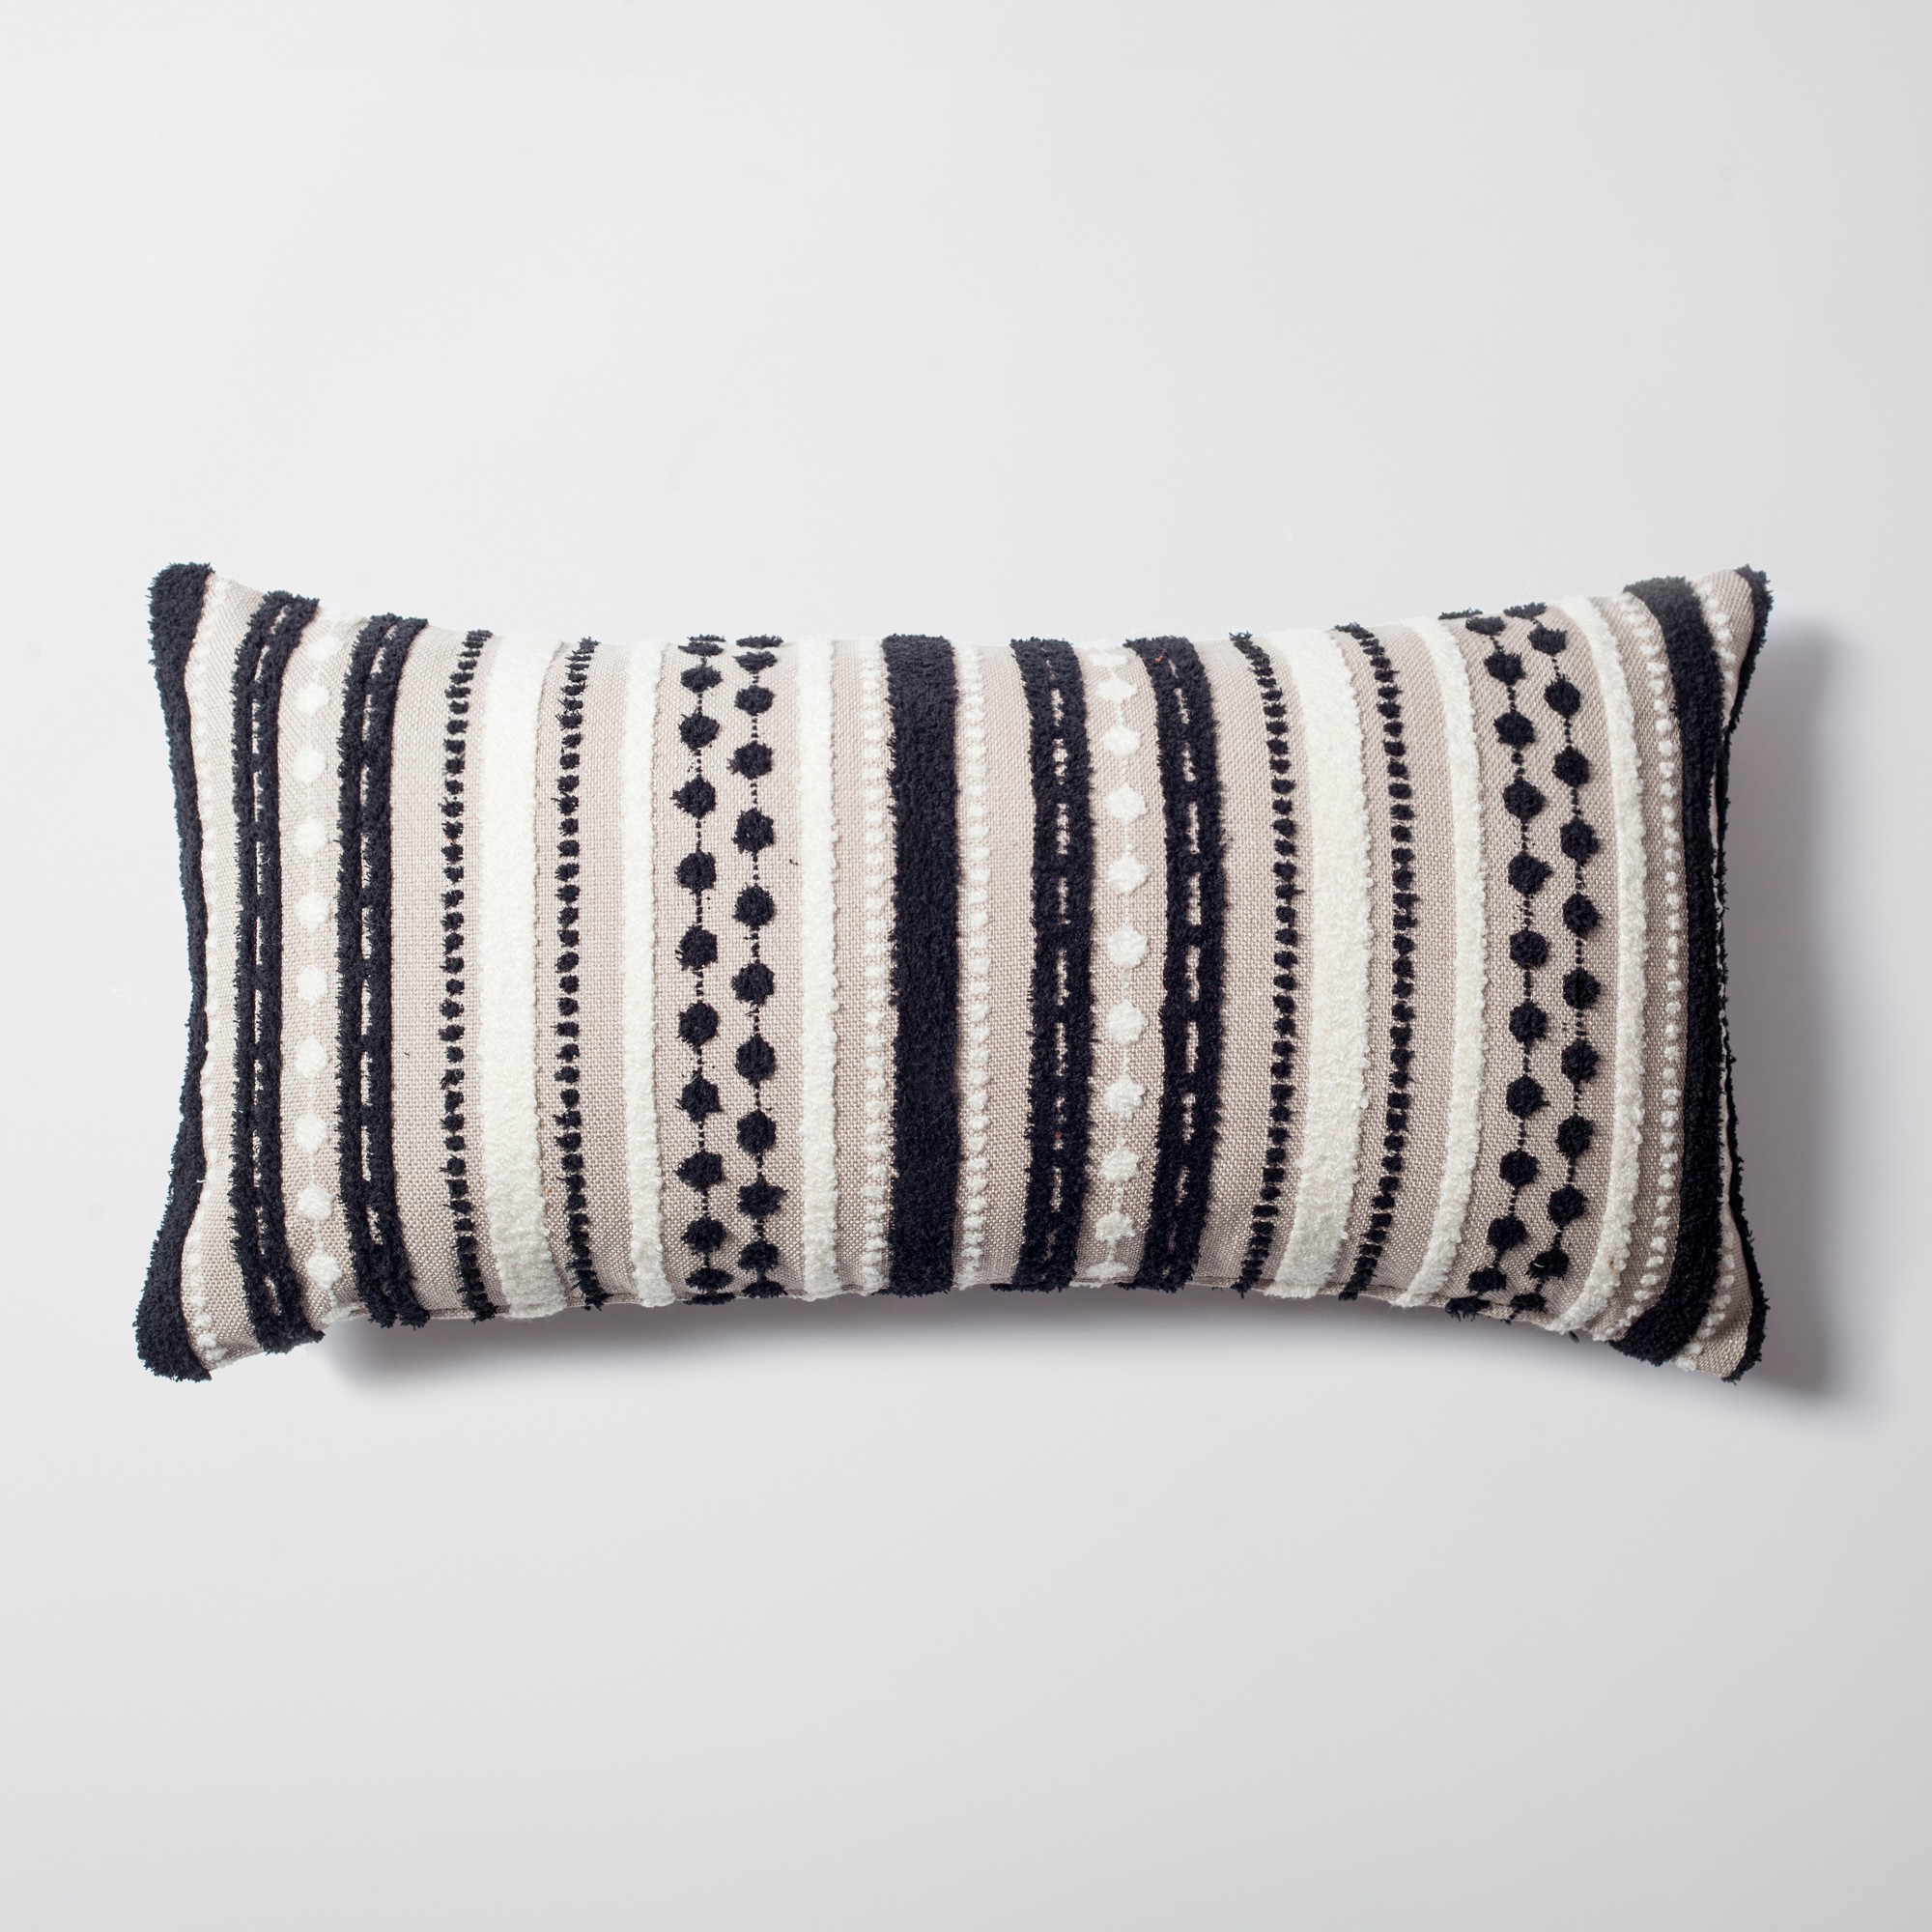 Nomad - Multicolored Striped Linen Decorative Pillow 14x28 Inch - Black &  White